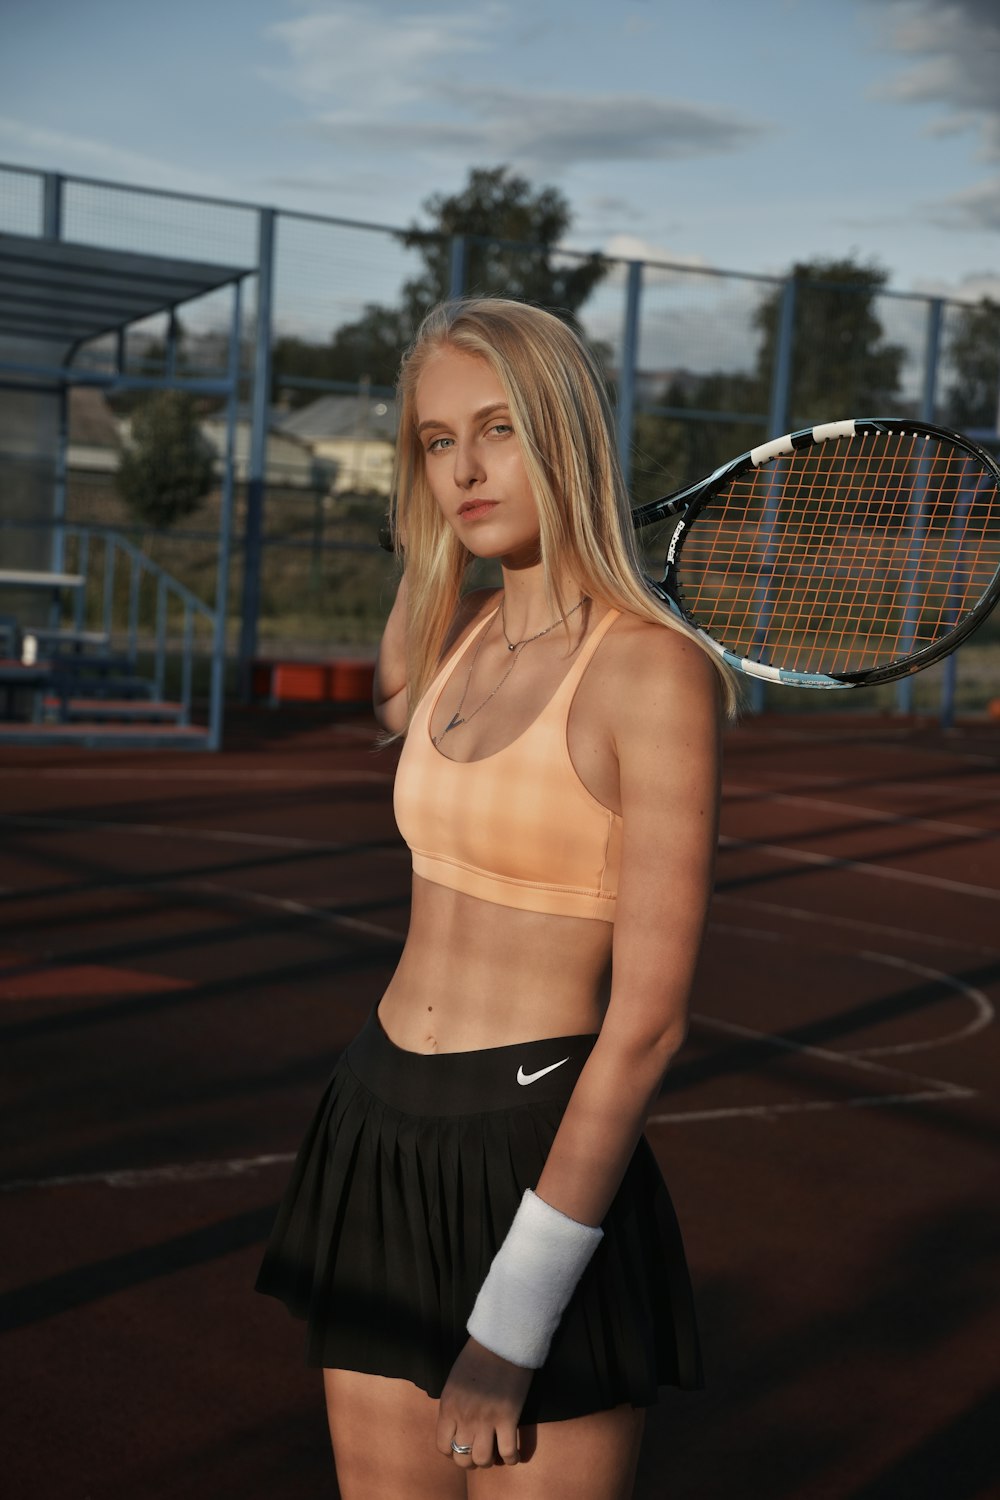 테니스 코트 위에 테니스 라켓을 들고 있는 여자